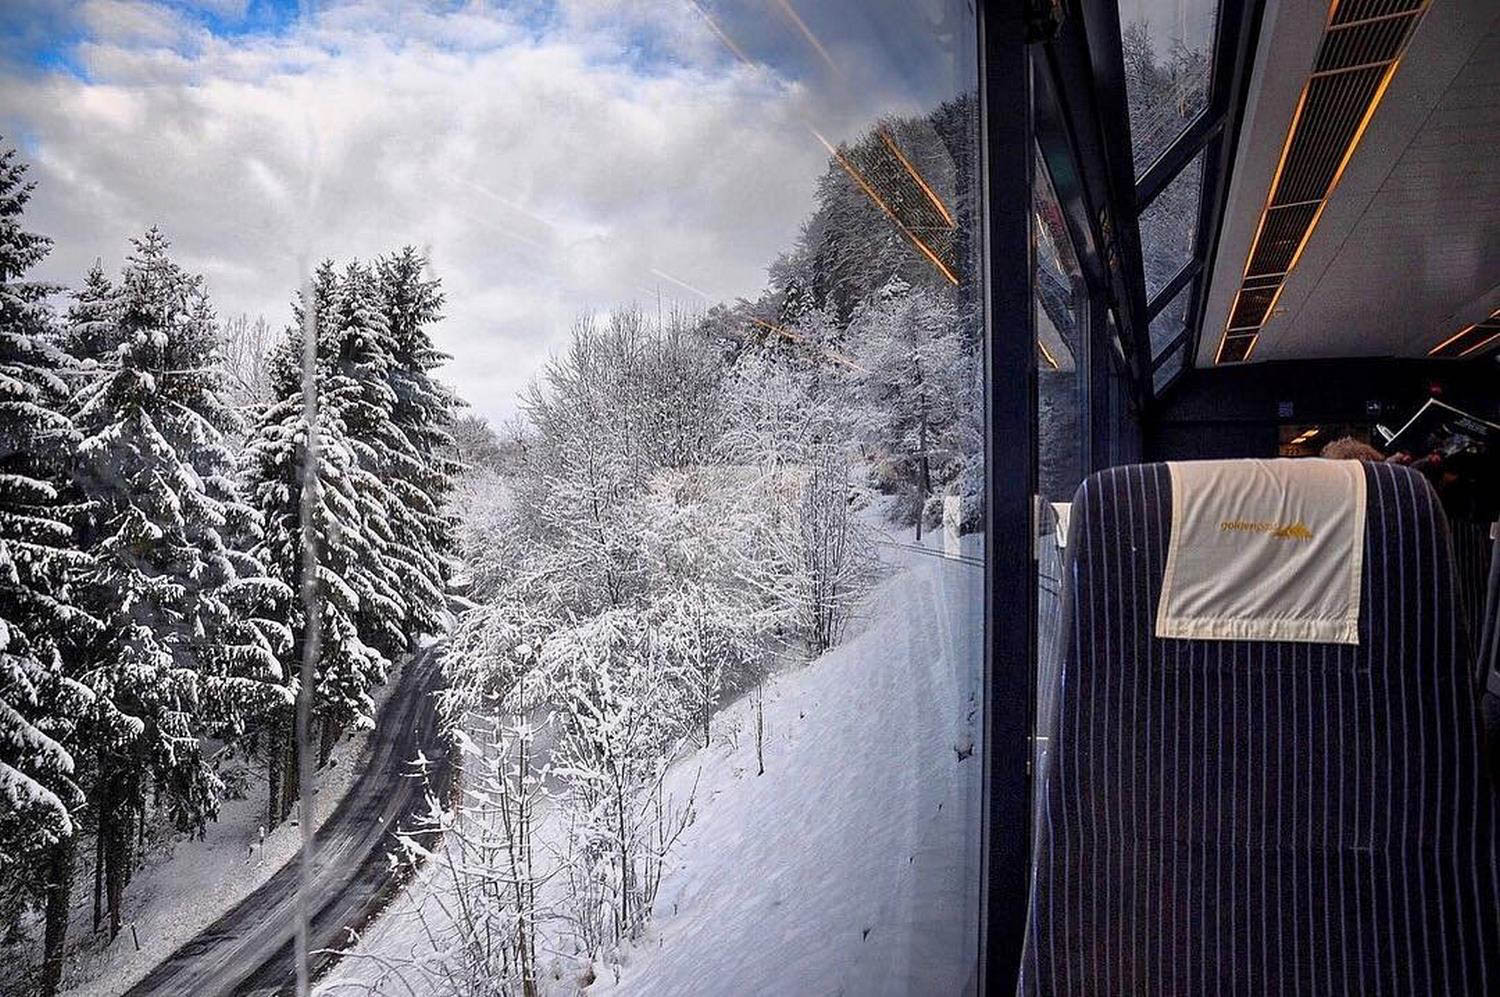 Château-d'Oex风景火车瑞士可持续旅游